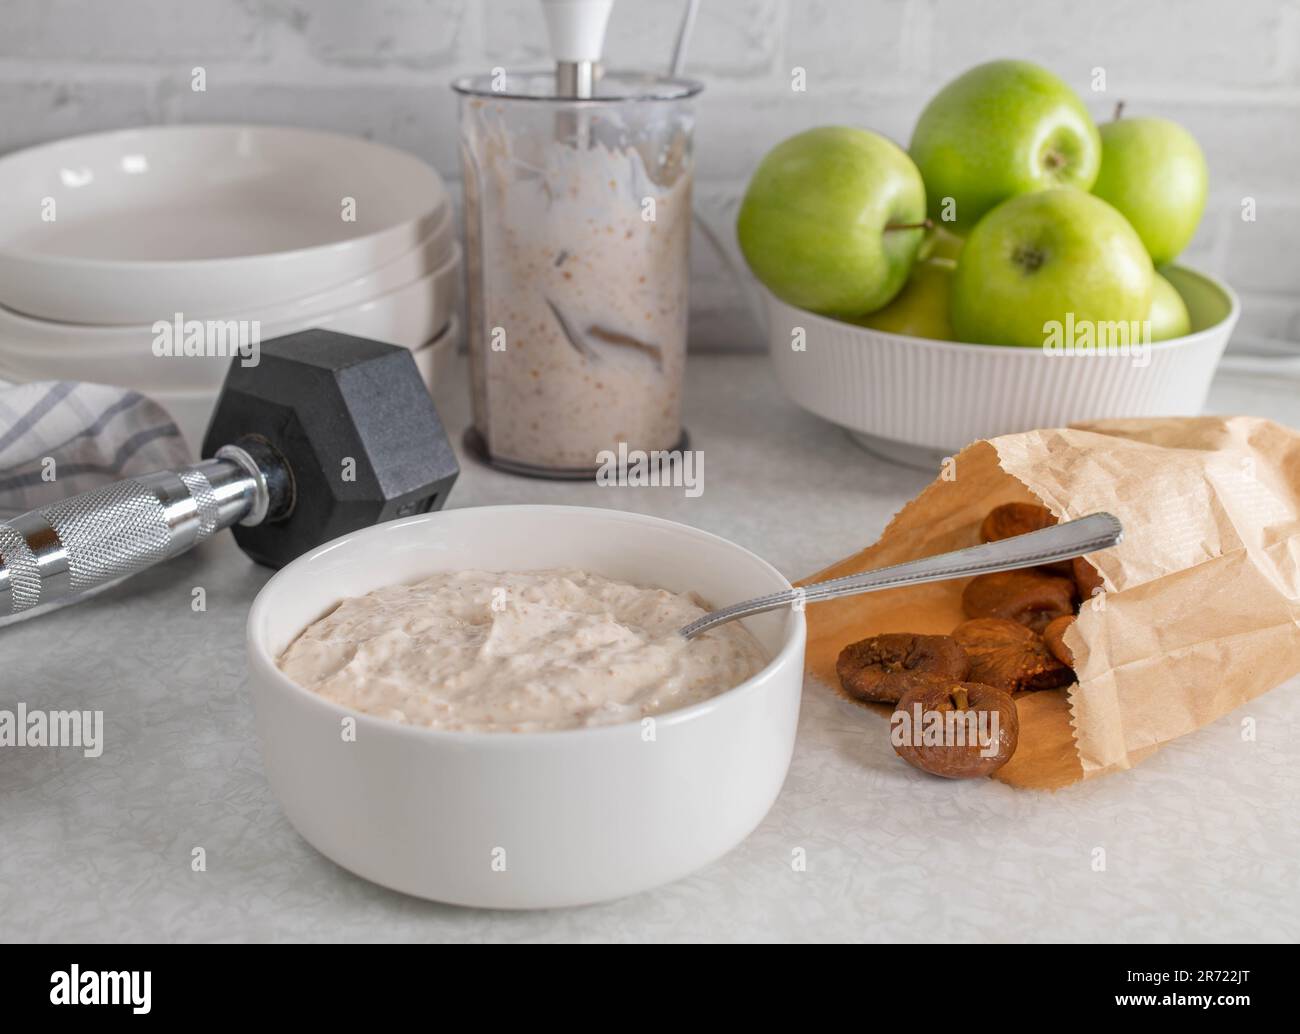 Joghurt mit getrockneten Feigen in einer Schüssel. Köstliche Mahlzeit für Fitness, Ernährung, gesunde Ernährung mit natürlicher Süße. Stockfoto